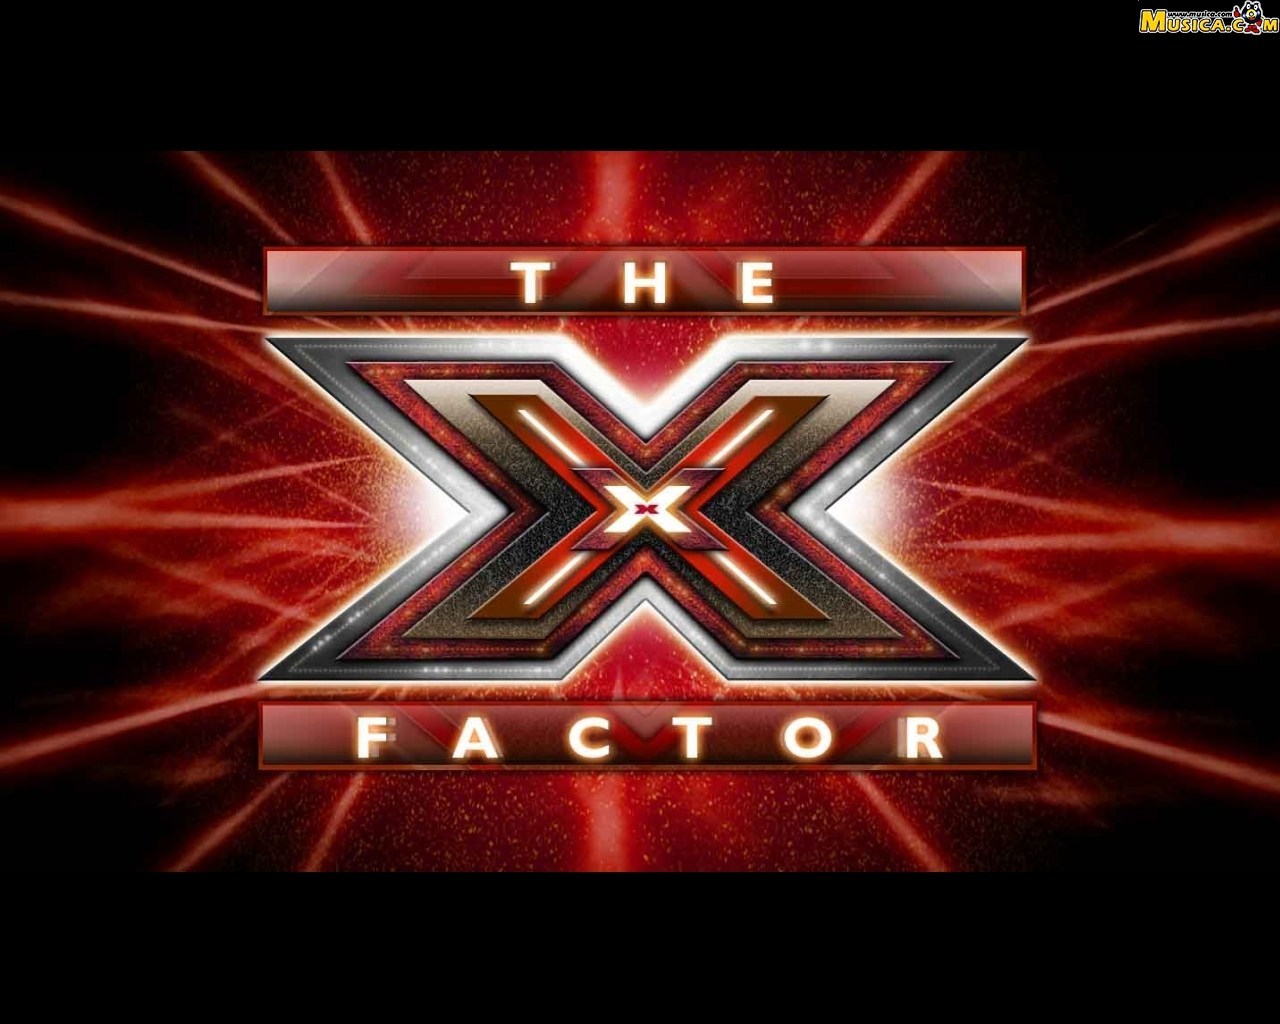 Fondo de pantalla de Factor X